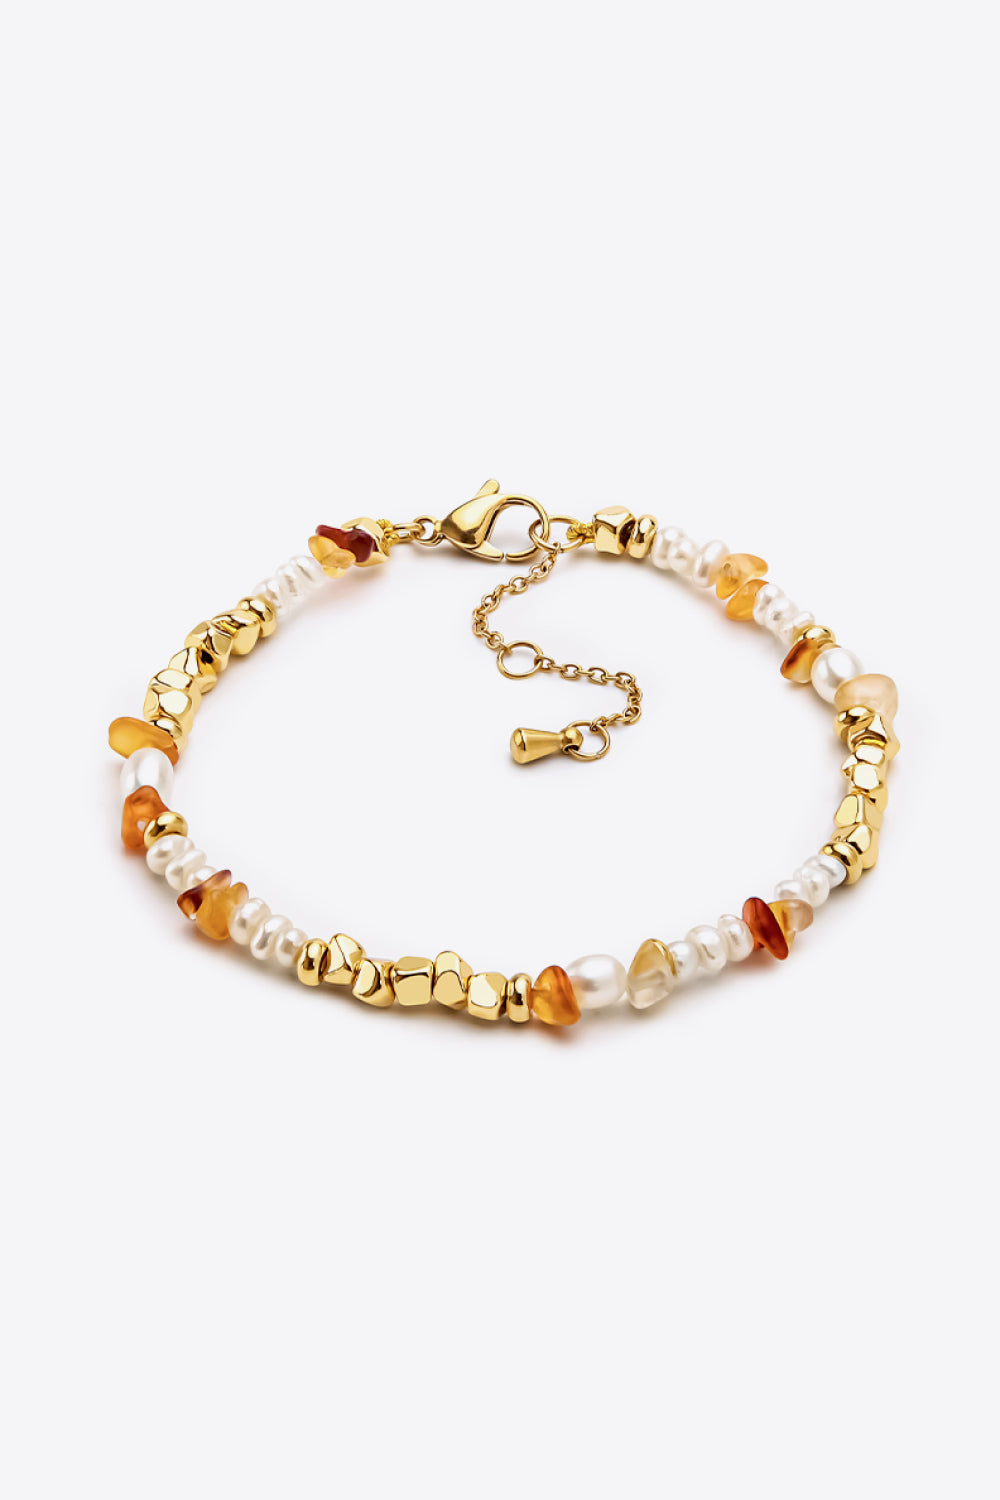 Freshwater Pearl Zinc Alloy Bracelet - Gold / One Size - Women’s Jewelry - Bracelets - 1 - 2024